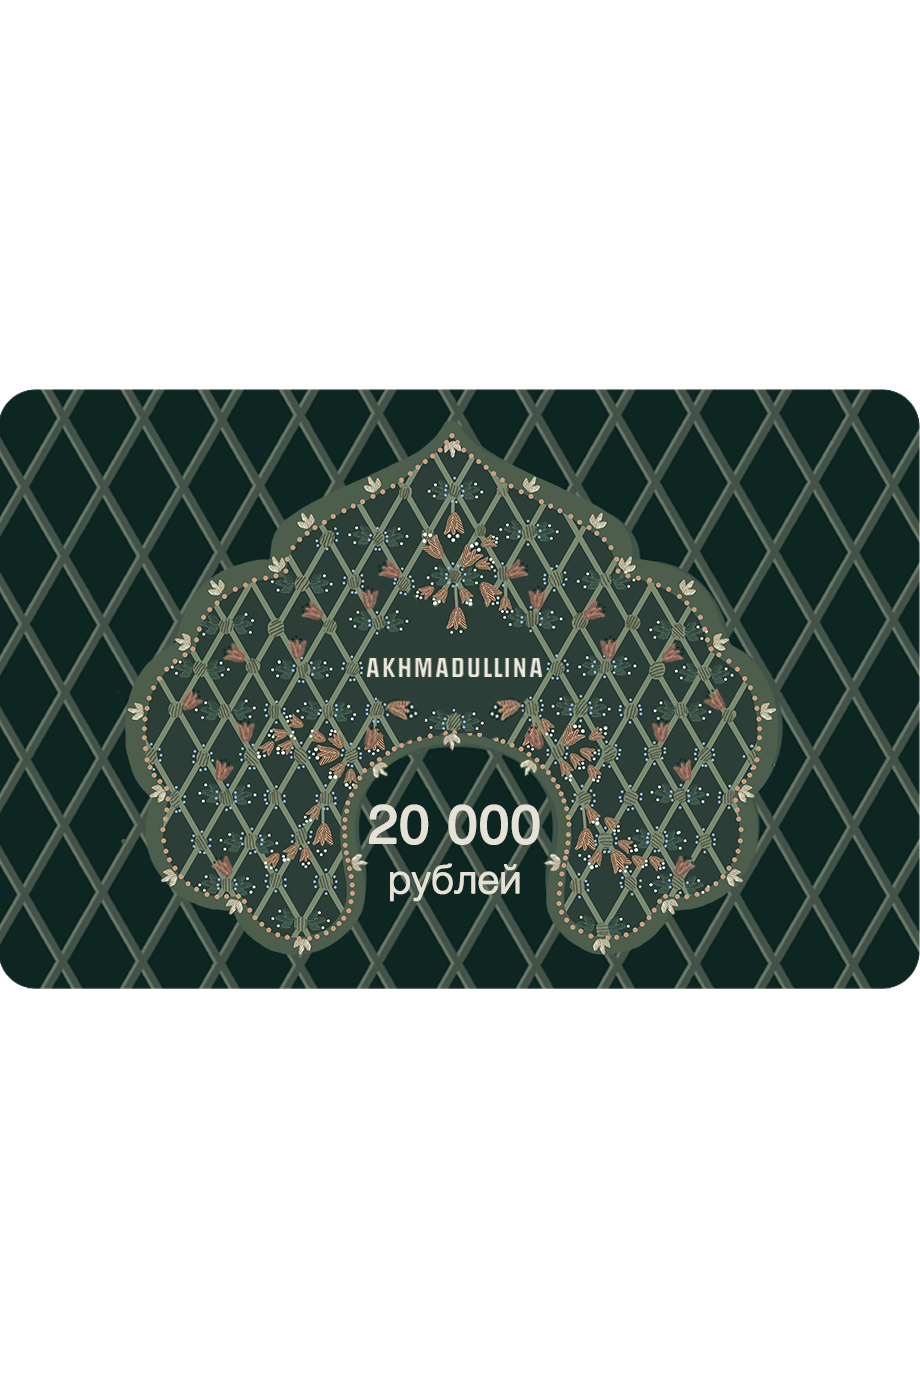 Подарочный сертификат 20 000 руб.